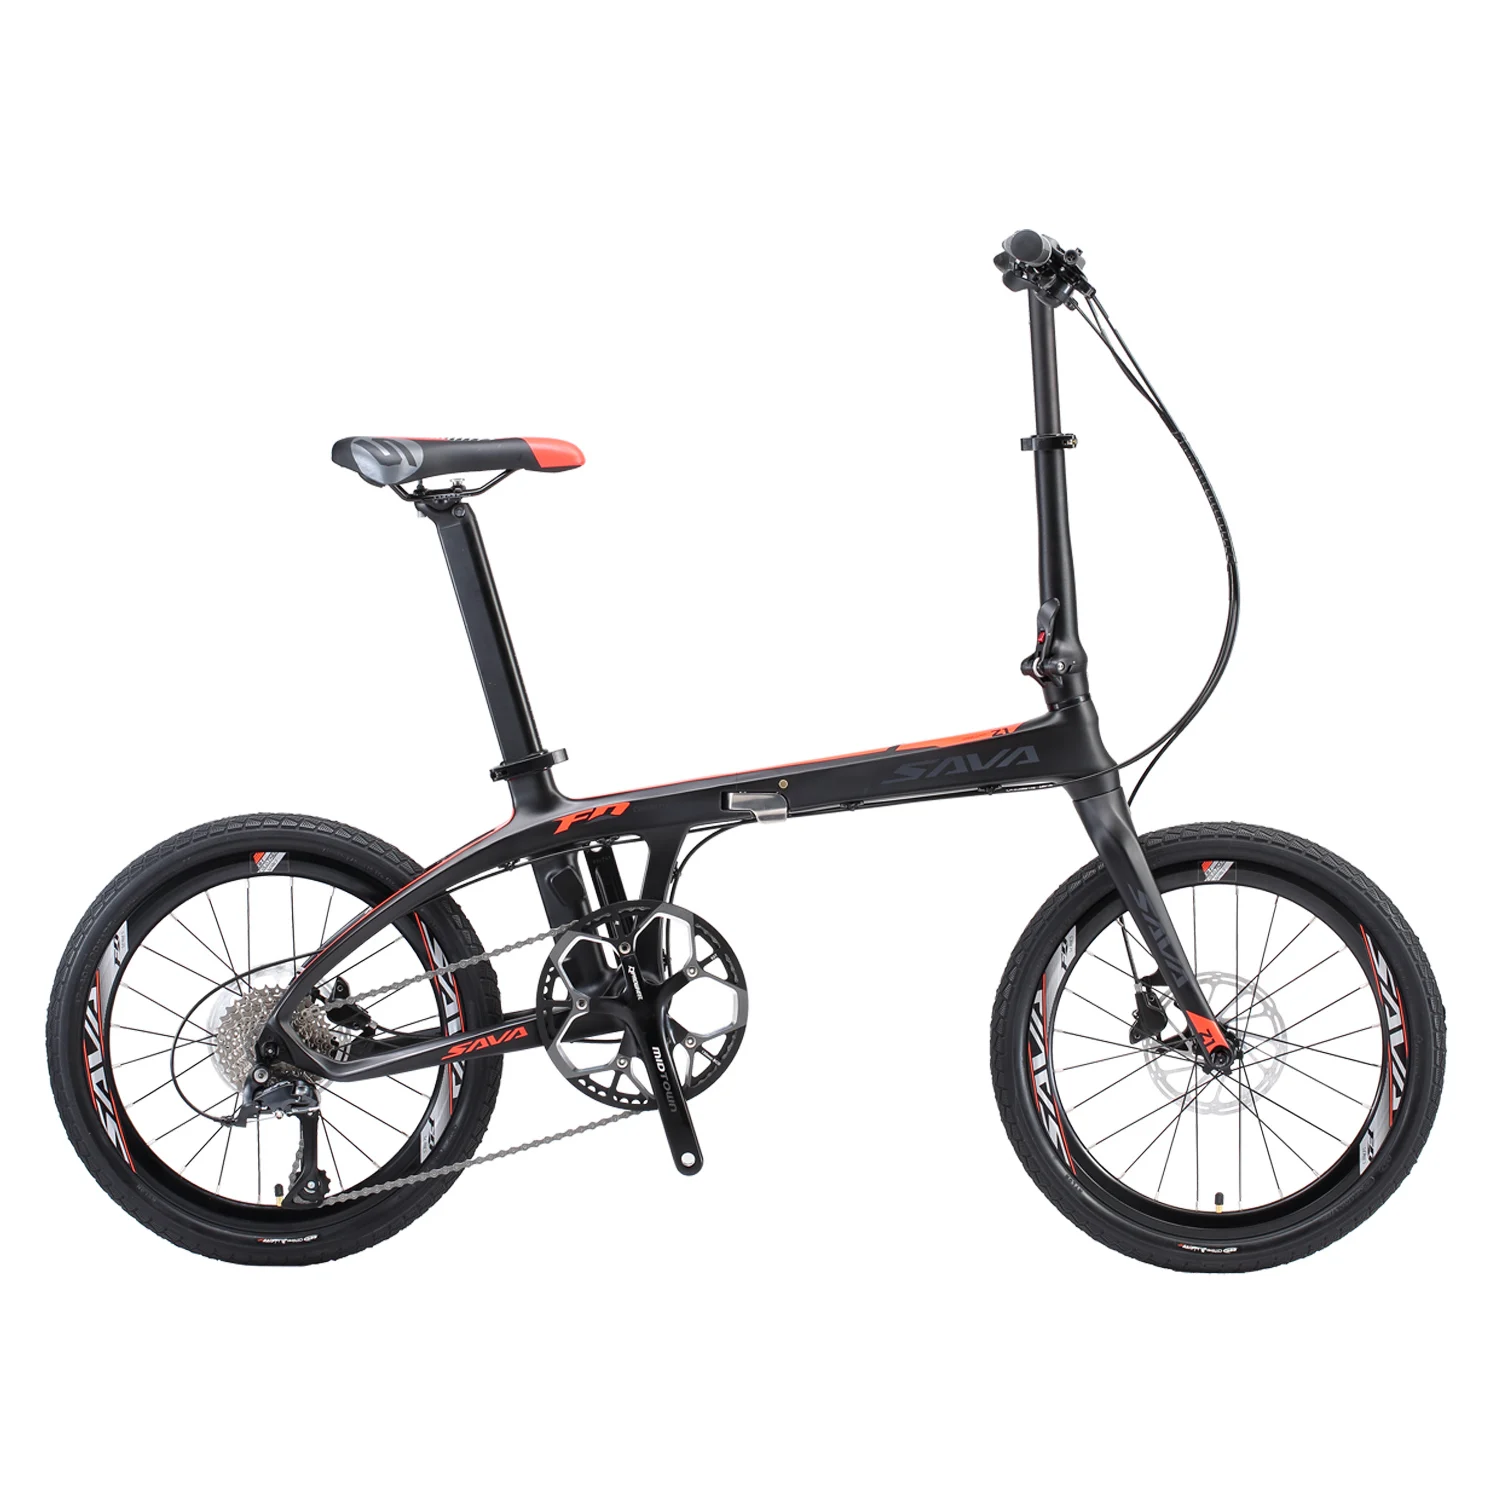 Carhon fiber складной велосипед 20 дюймов складной велосипед 20 дюймов SAVA карбоновый велосипед складной мини карбоновый компактный городской велосипед складной - Цвет: Black Red